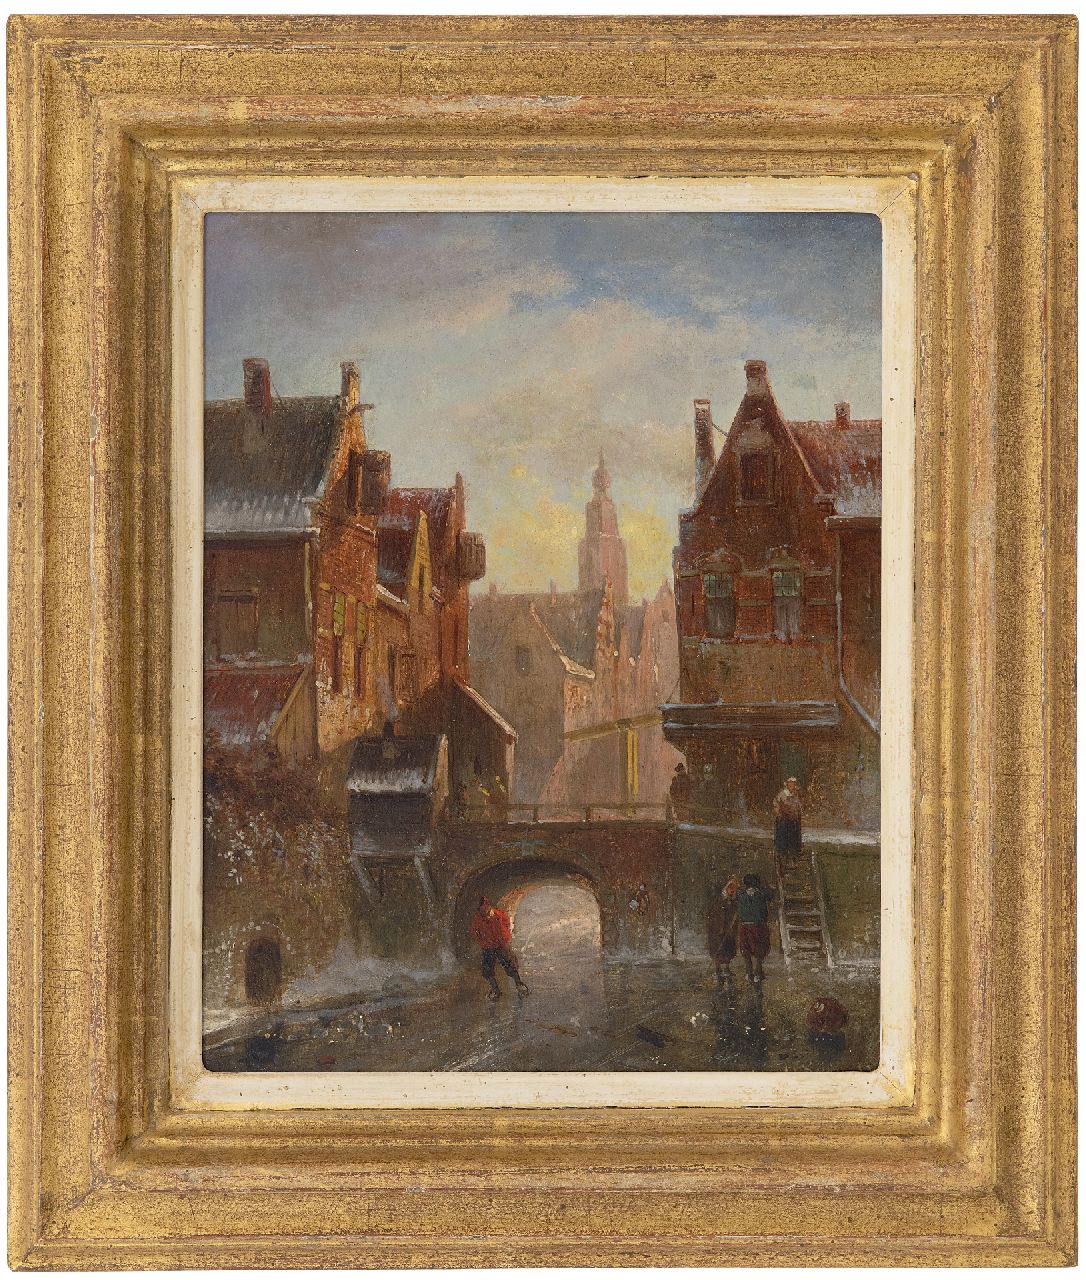 Leickert C.H.J.  | 'Charles' Henri Joseph Leickert | Schilderijen te koop aangeboden | Winters stadsgezicht met figuren op het ijs, olieverf op paneel 25,1 x 19,8 cm, gesigneerd rechtsonder